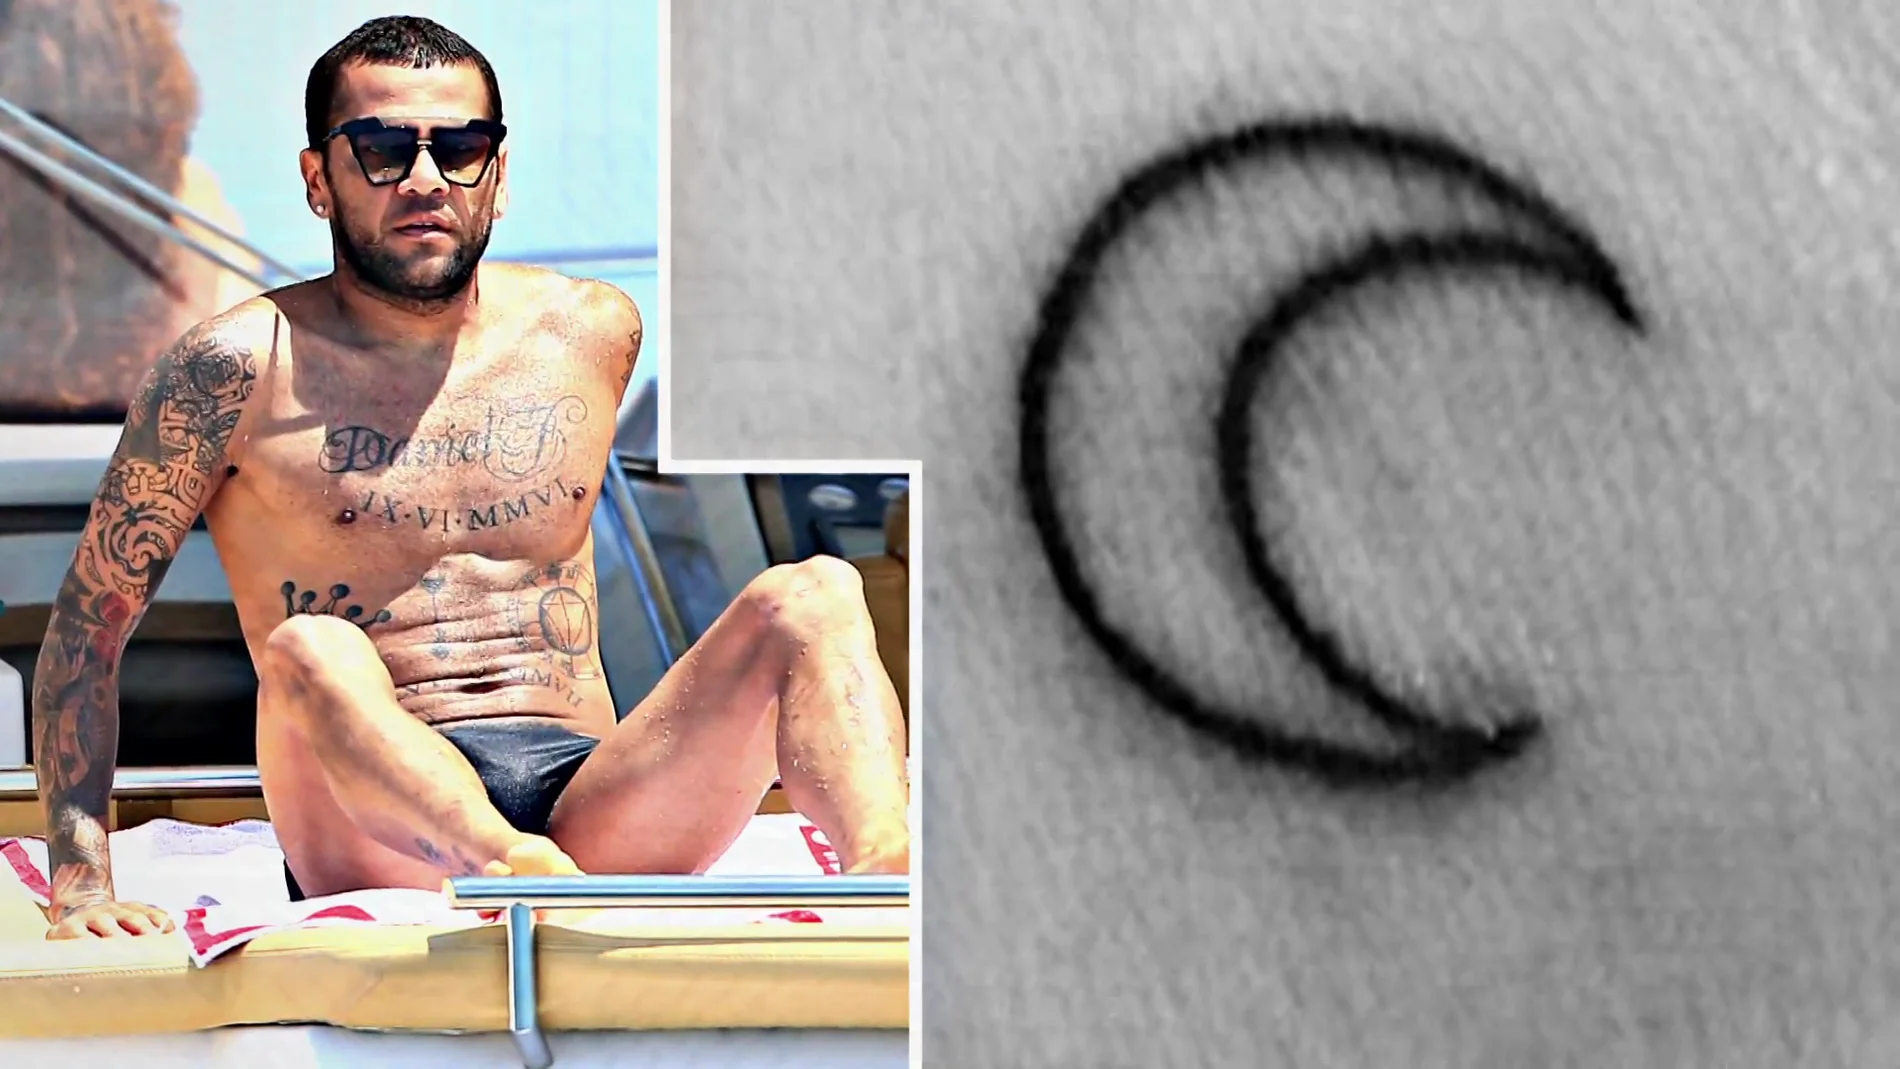 El tatuaje clave en la identificación de Alves por parte de la víctima